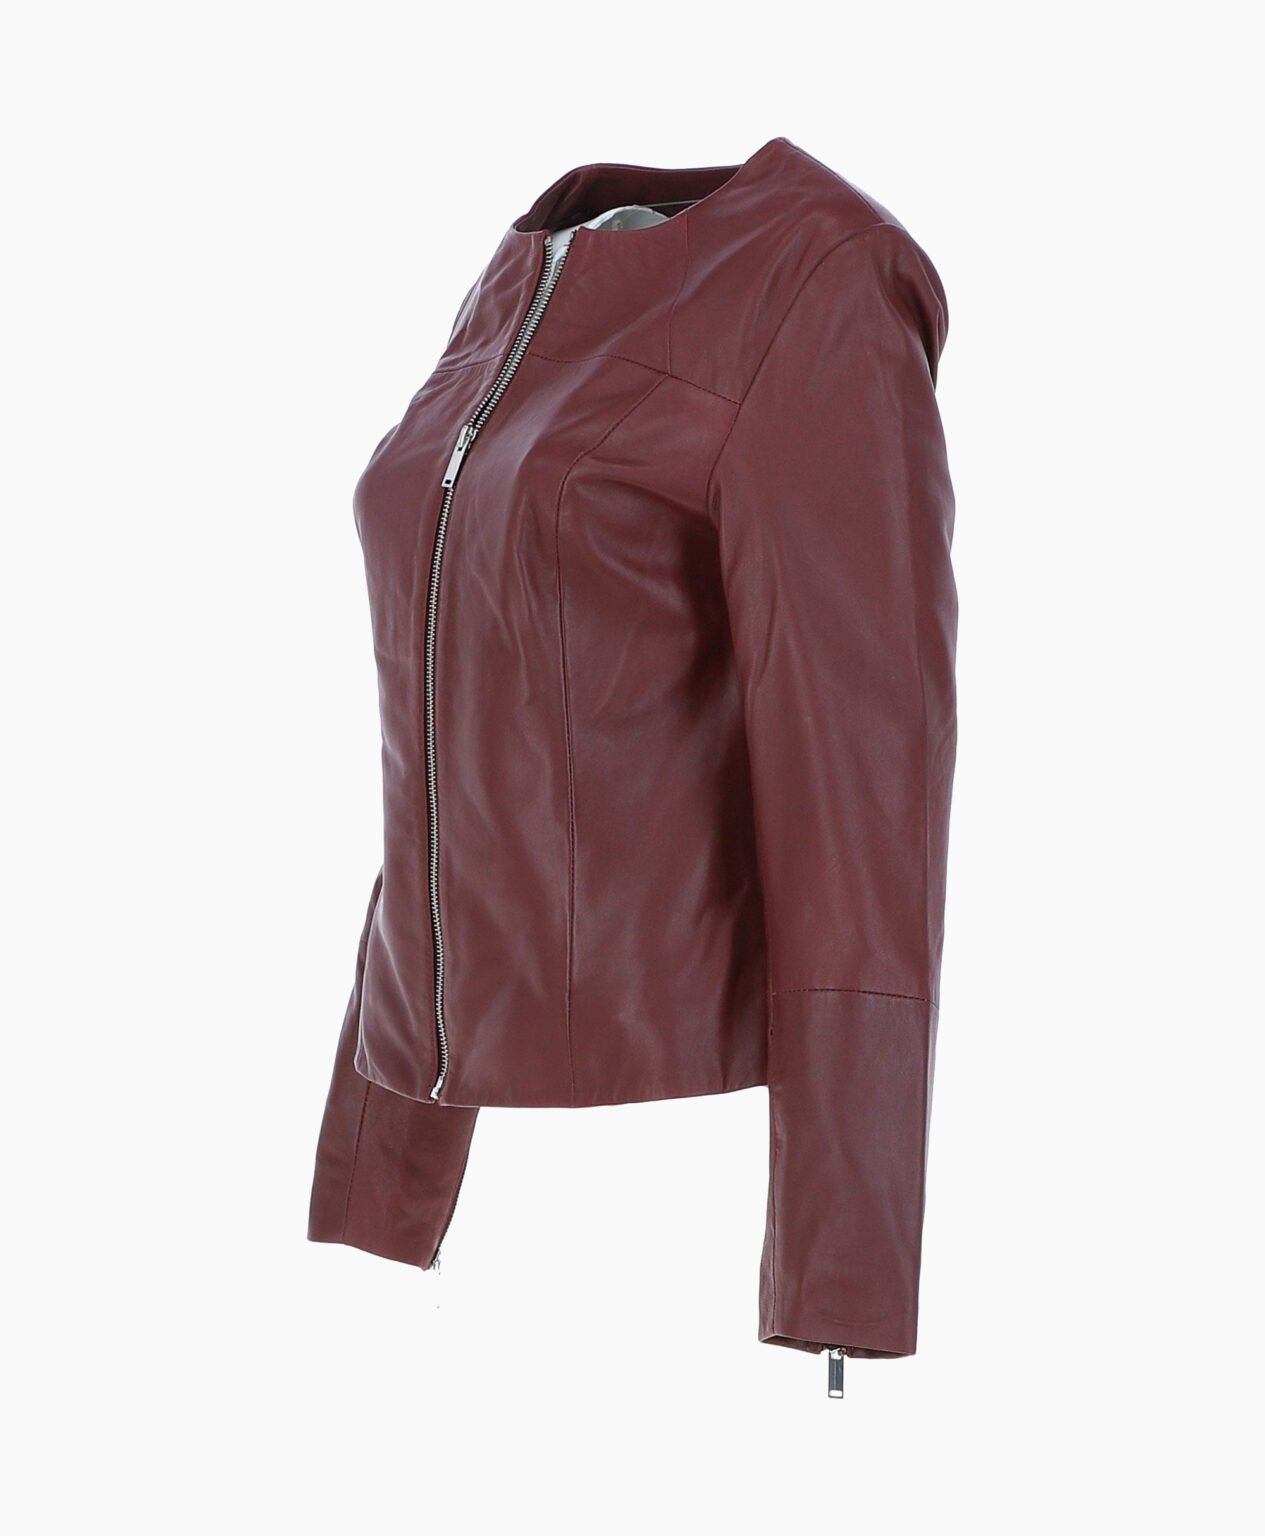 vogue-jacket-leather-fashion-jacket-oxblood-elizabeth-image201